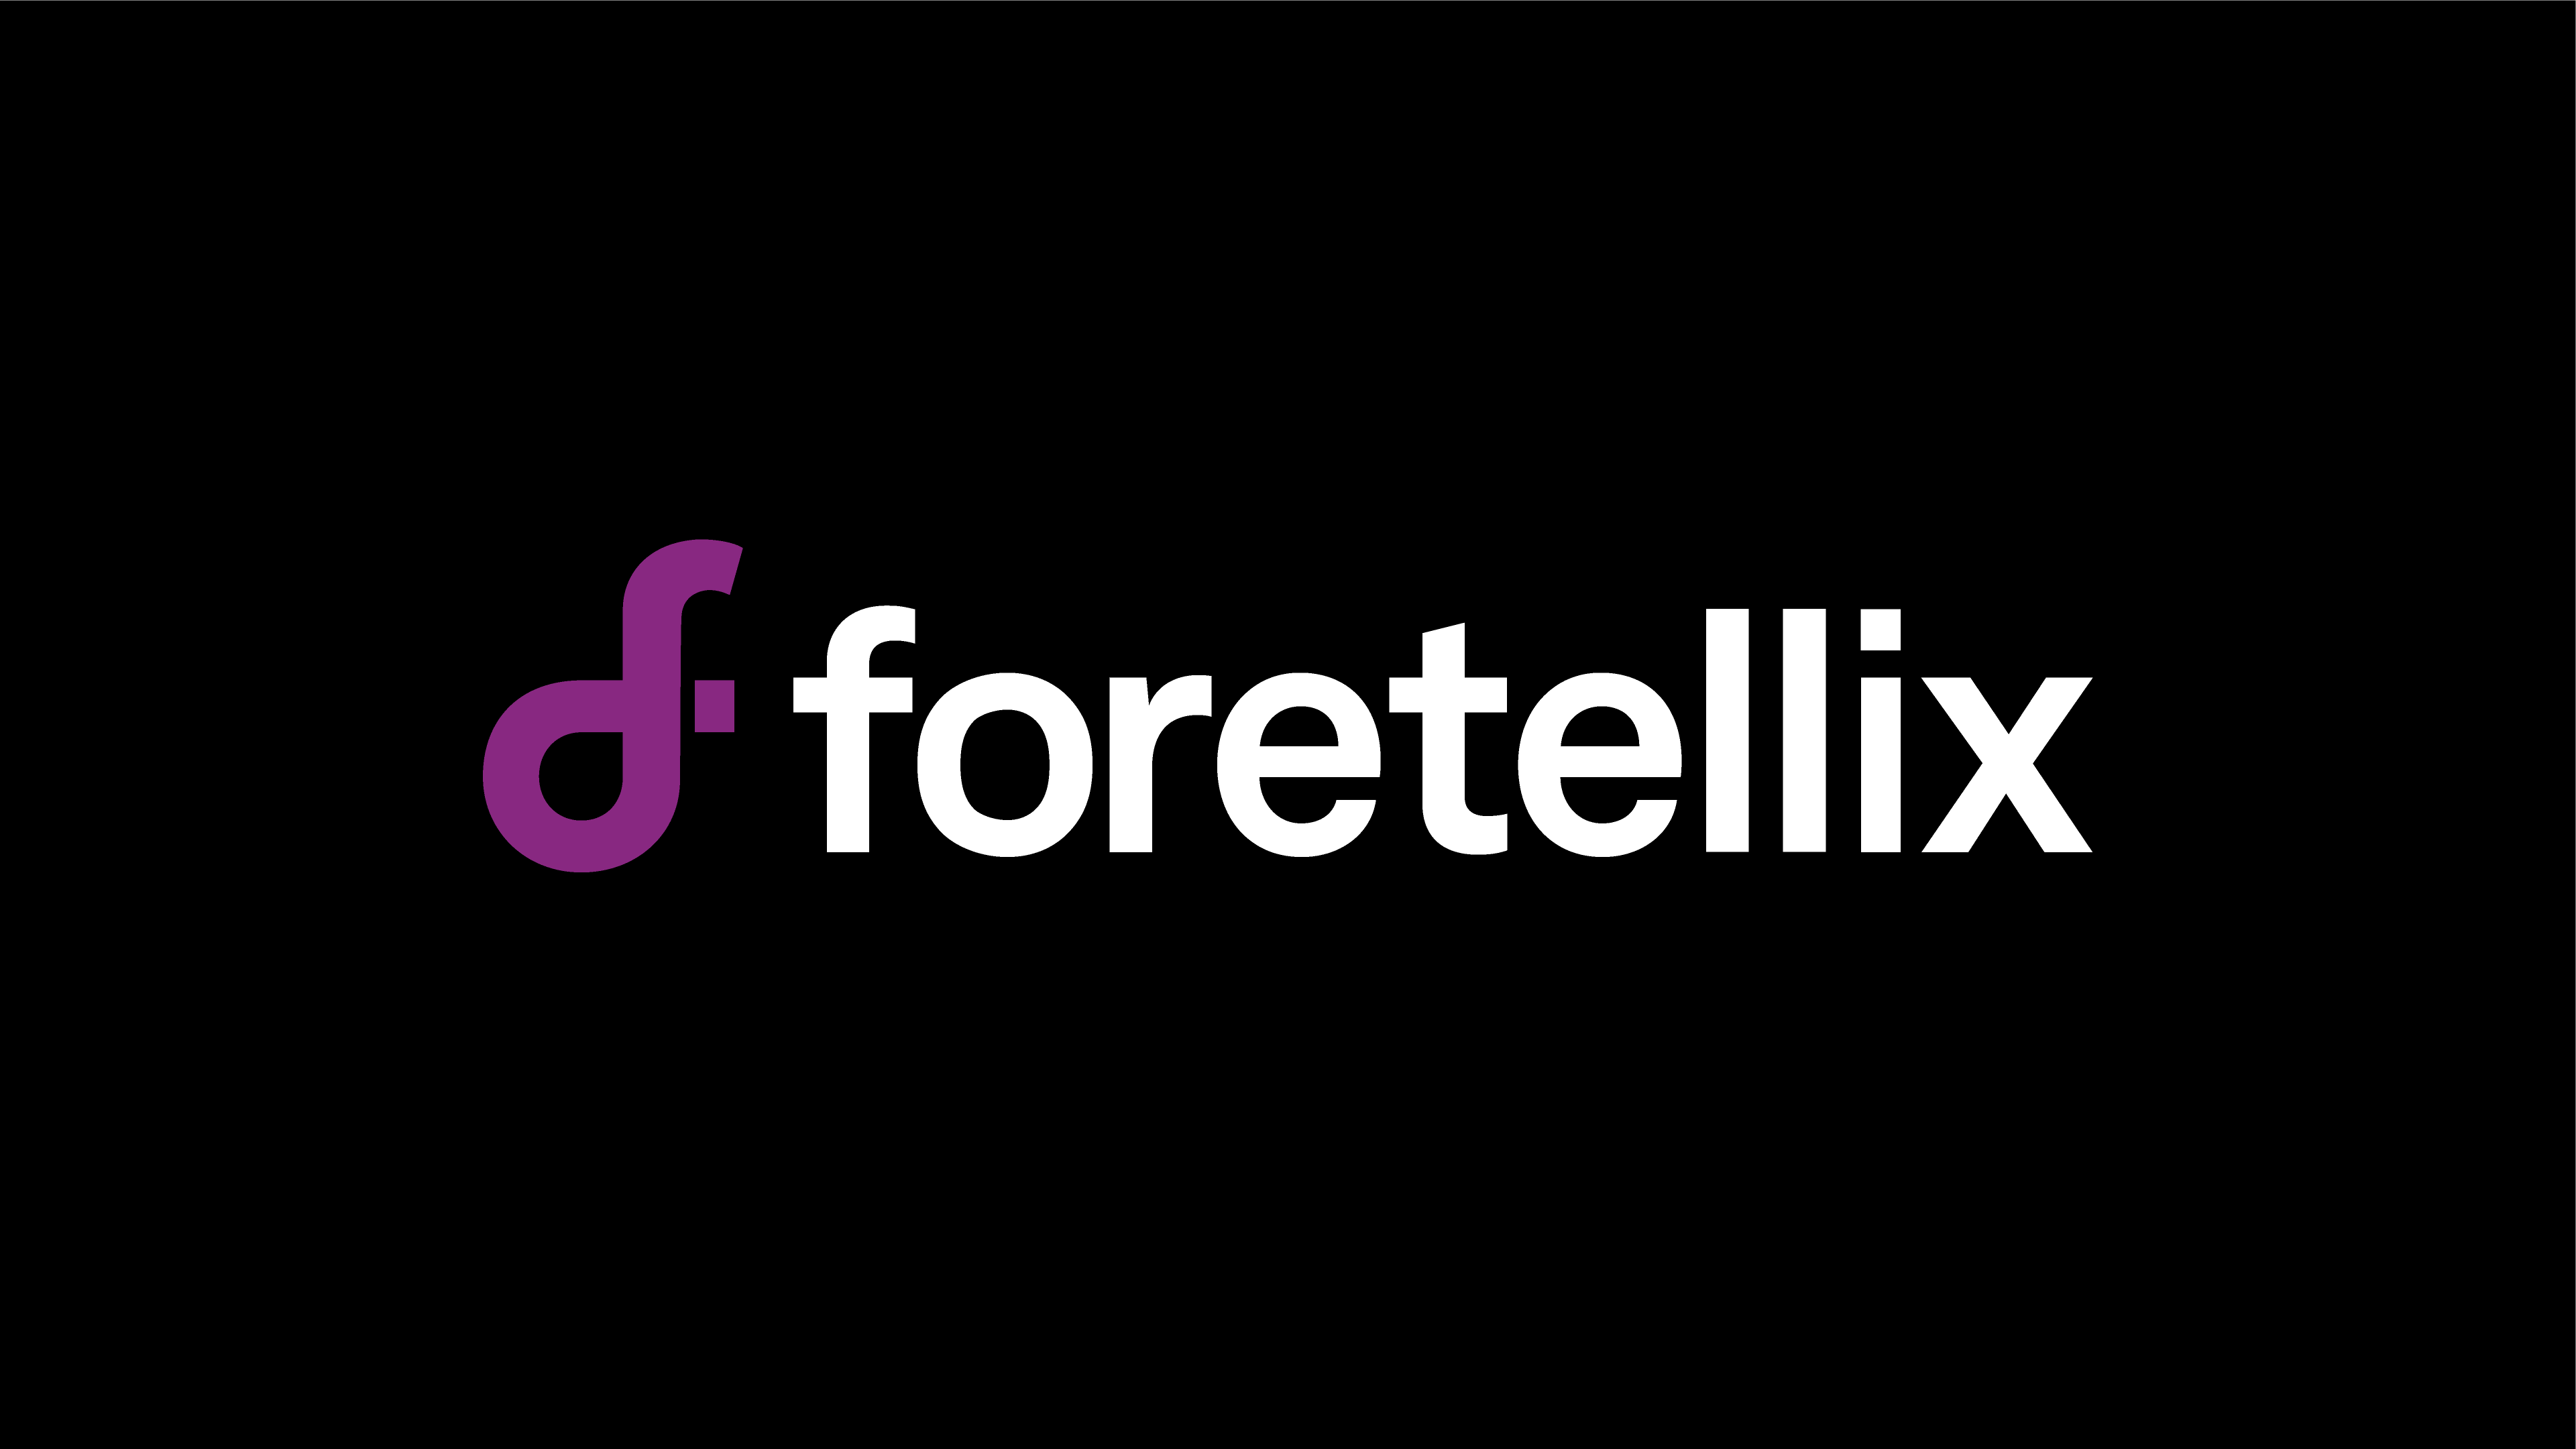 Foretellix、自動運転システムのシナリオ構築とテストに8500万ドルを調達